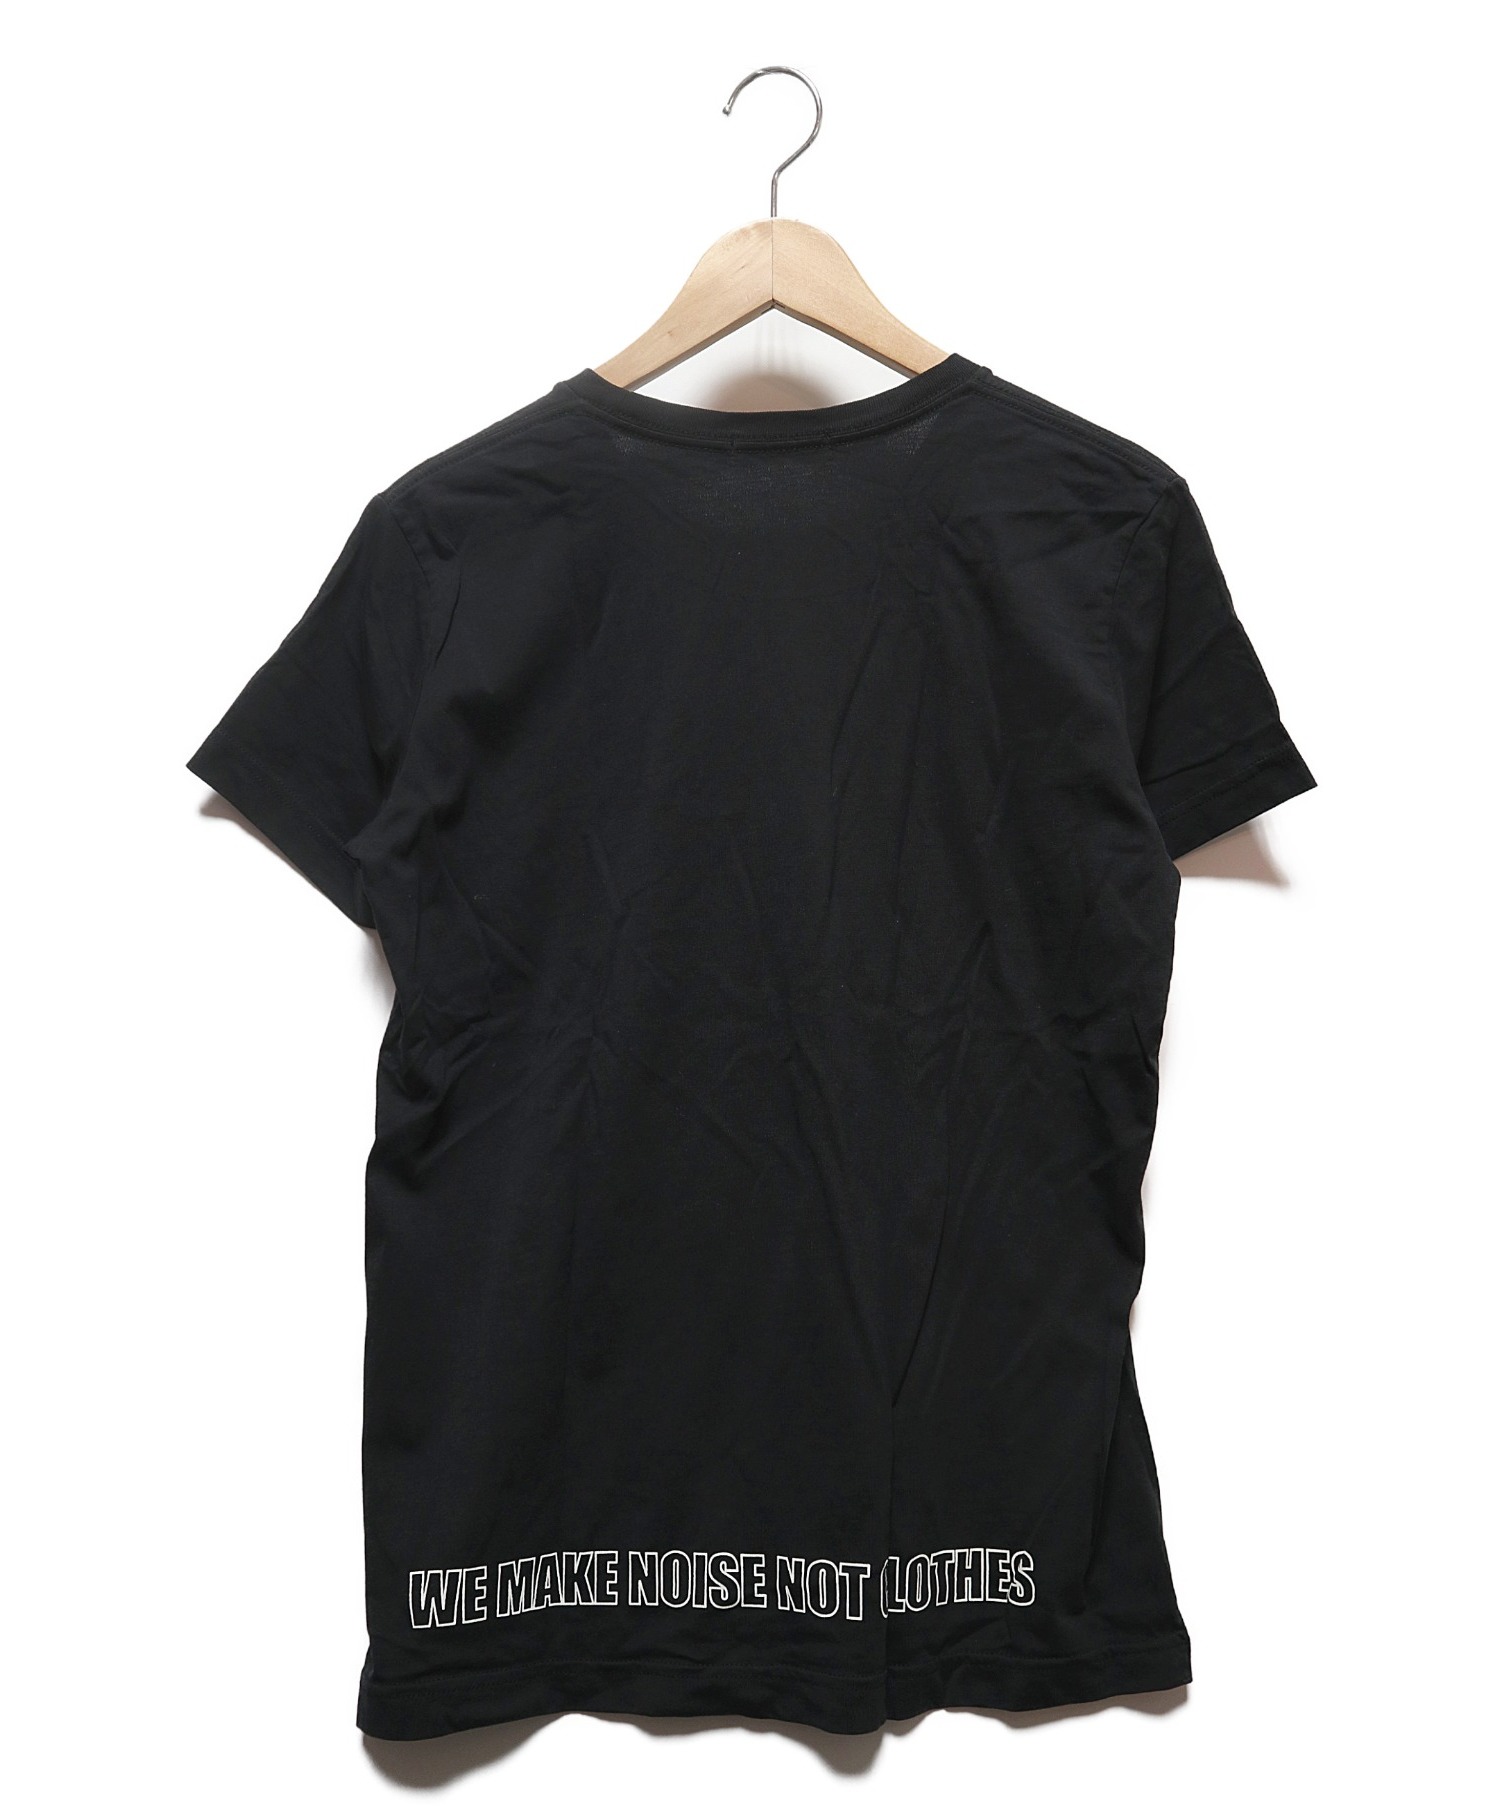 UNDERCOVER (アンダーカバー) UロゴTシャツ ブラック サイズ:S